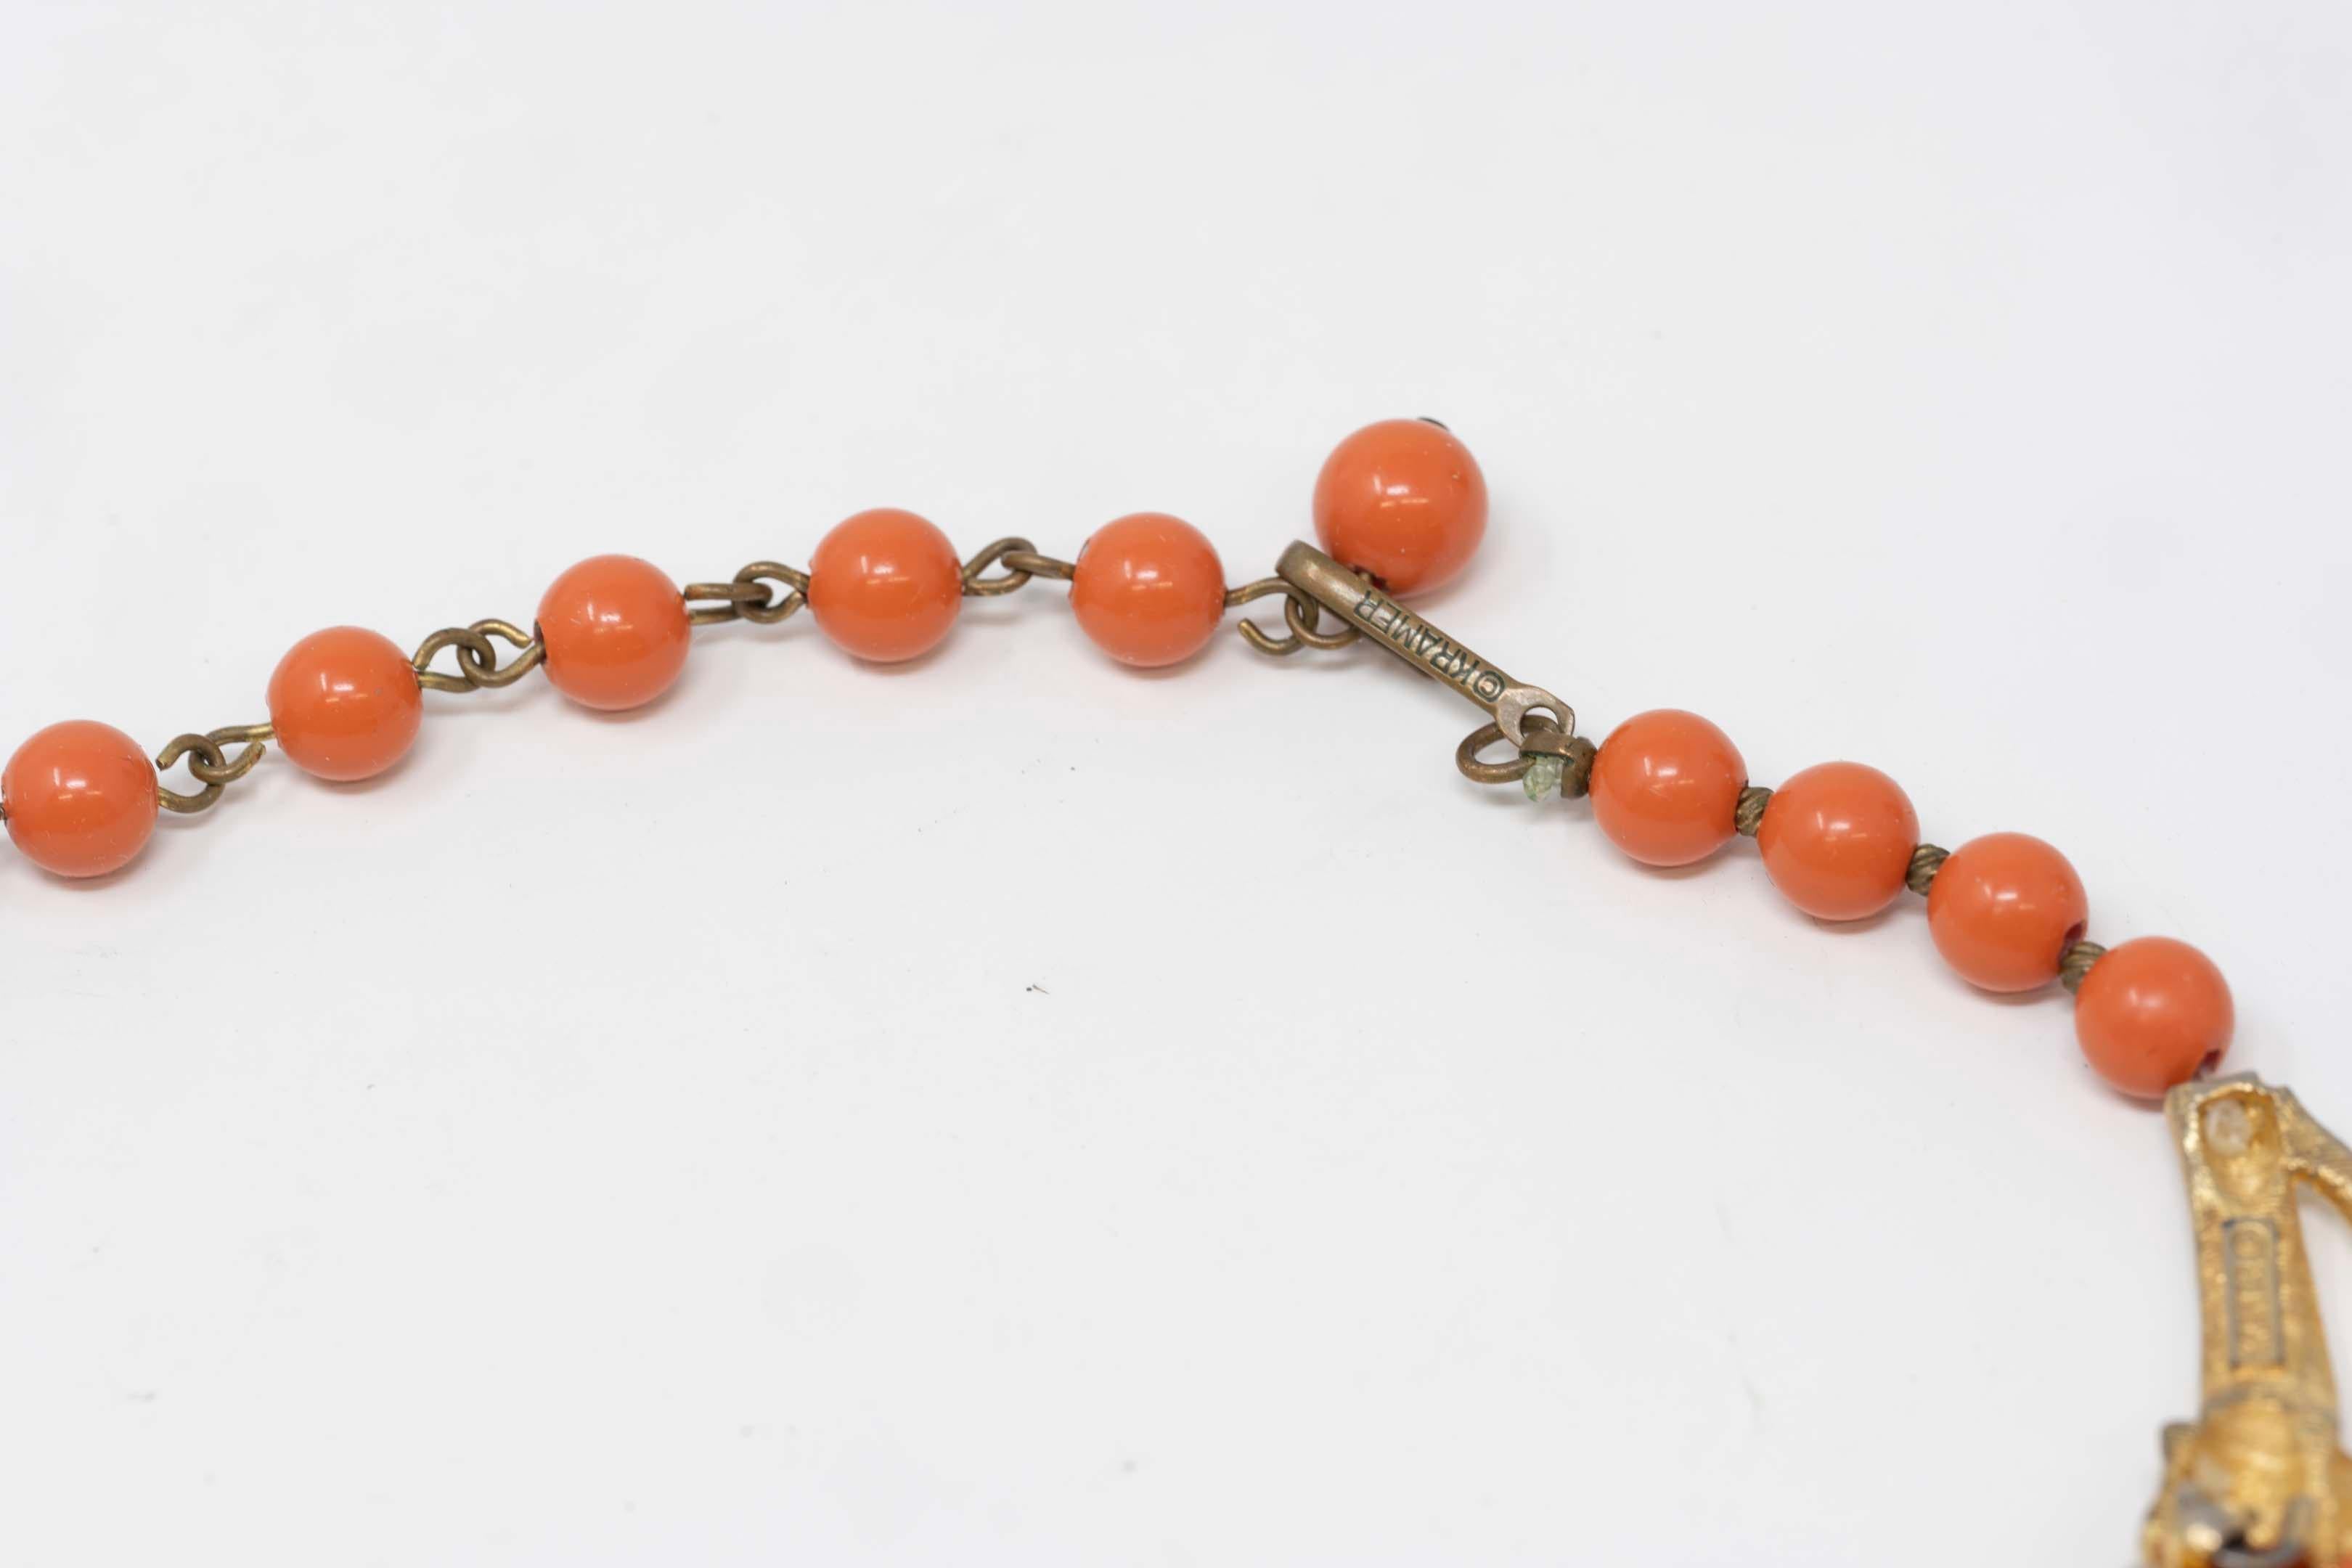 Vintage Kramer Necklace Gilt Metal and Coral Color Beads For Sale 2